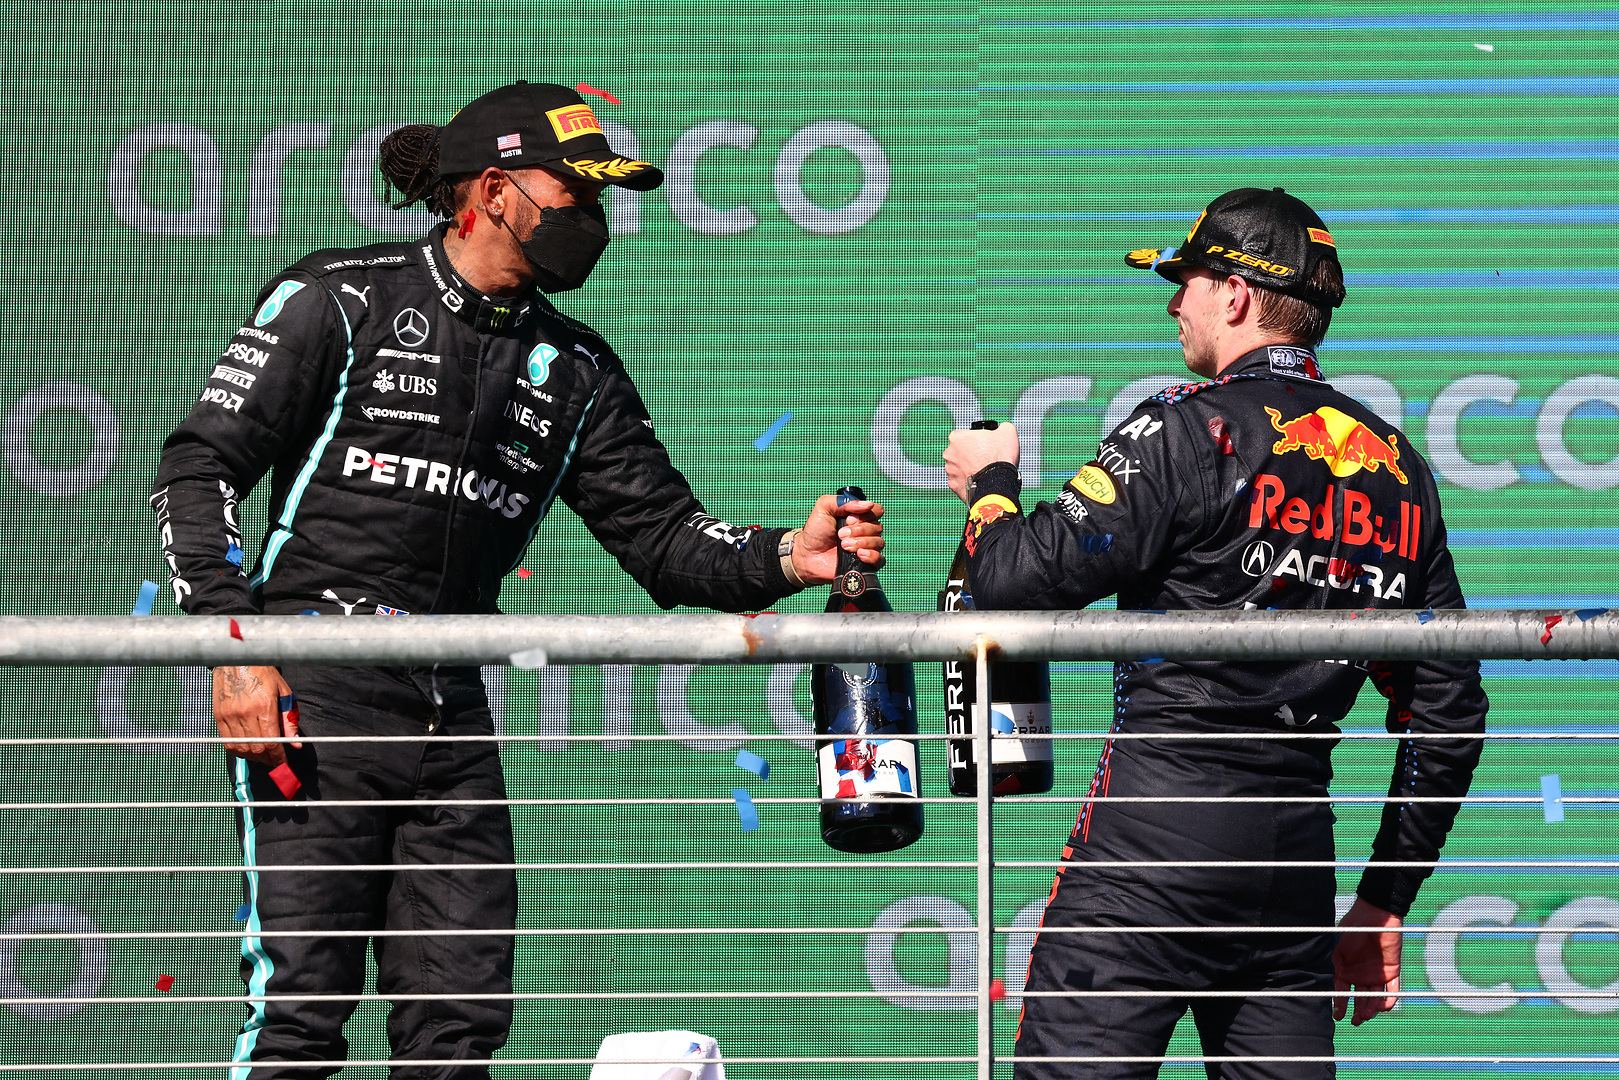 F1 - Rosberg : "Ça va être très serré lors des dernières courses"